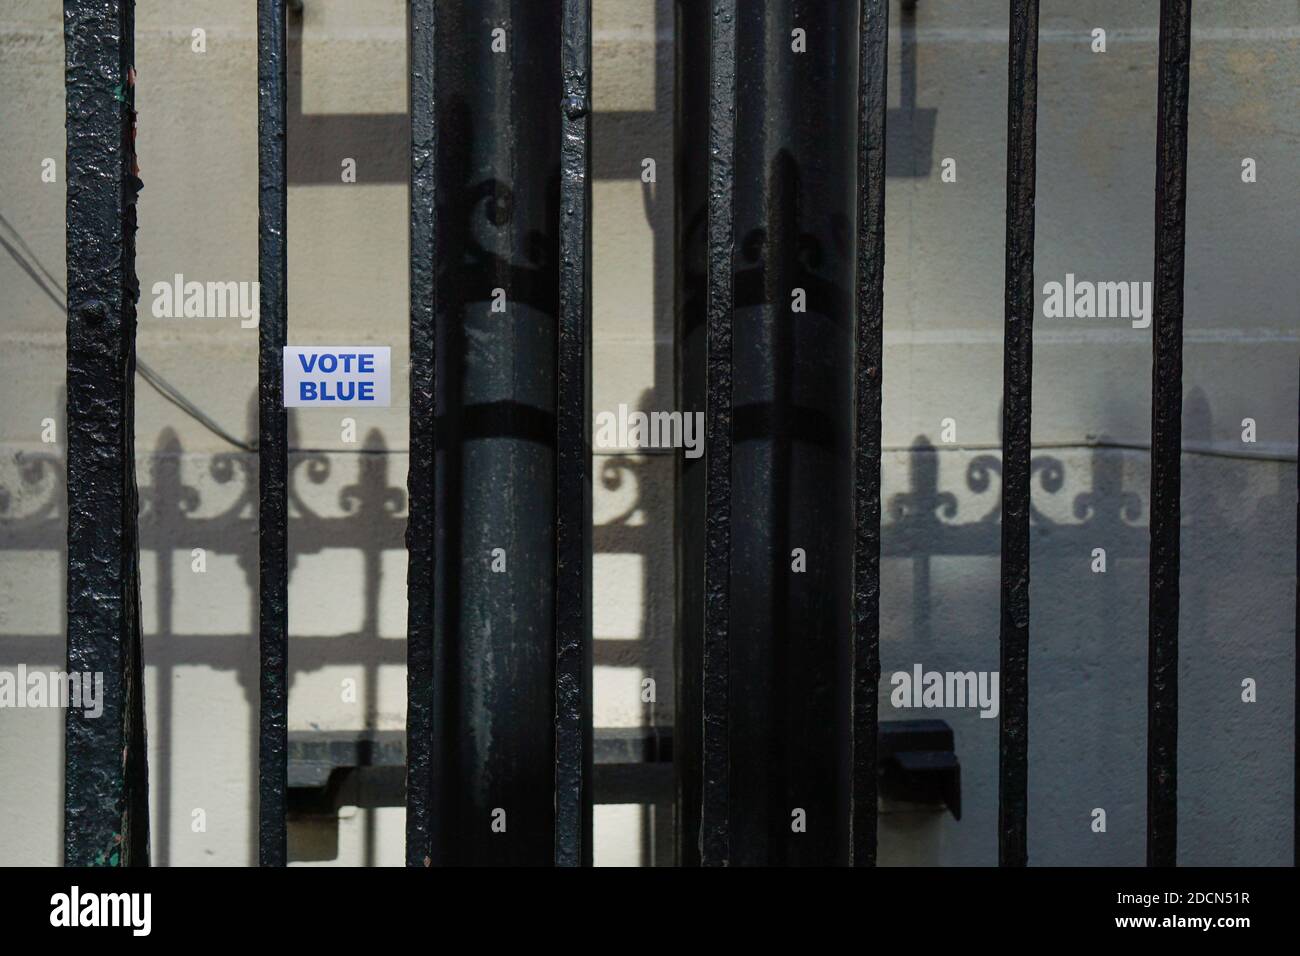 NEW YORK - 17. Oktober 2020: 'Vote Blue' Aufkleber an der Wand durch ein Tor geschossen. Stockfoto